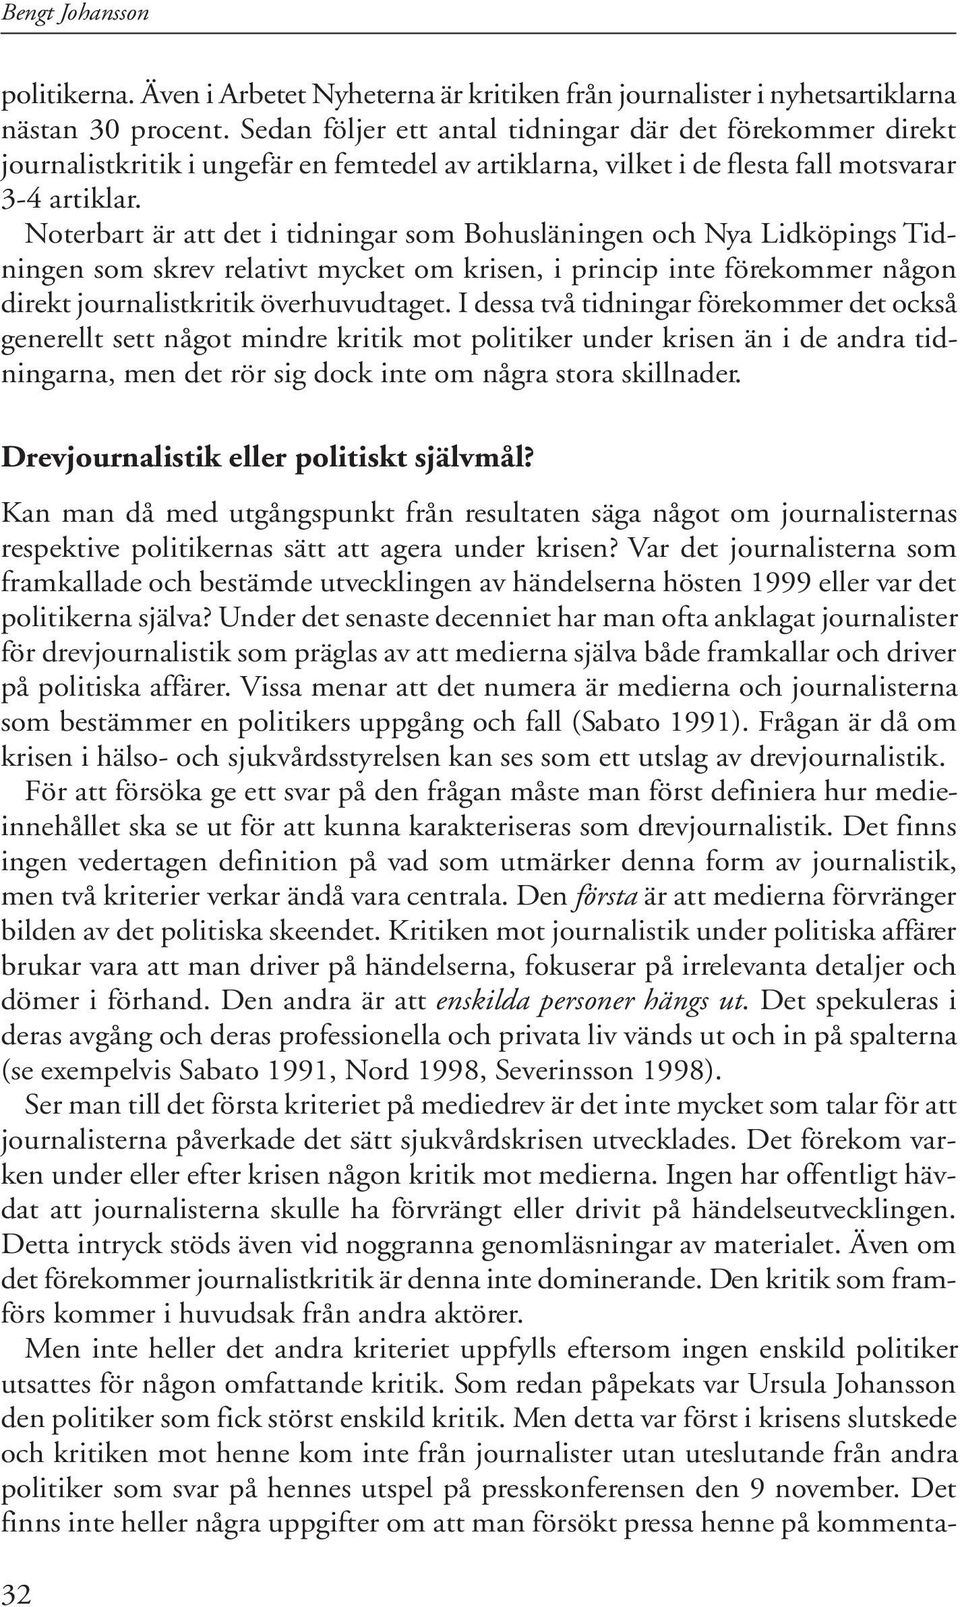 Noterbart är att det i tidningar som Bohusläningen och Nya Lidköpings Tidningen som skrev relativt mycket om krisen, i princip inte förekommer någon direkt journalistkritik överhuvudtaget.